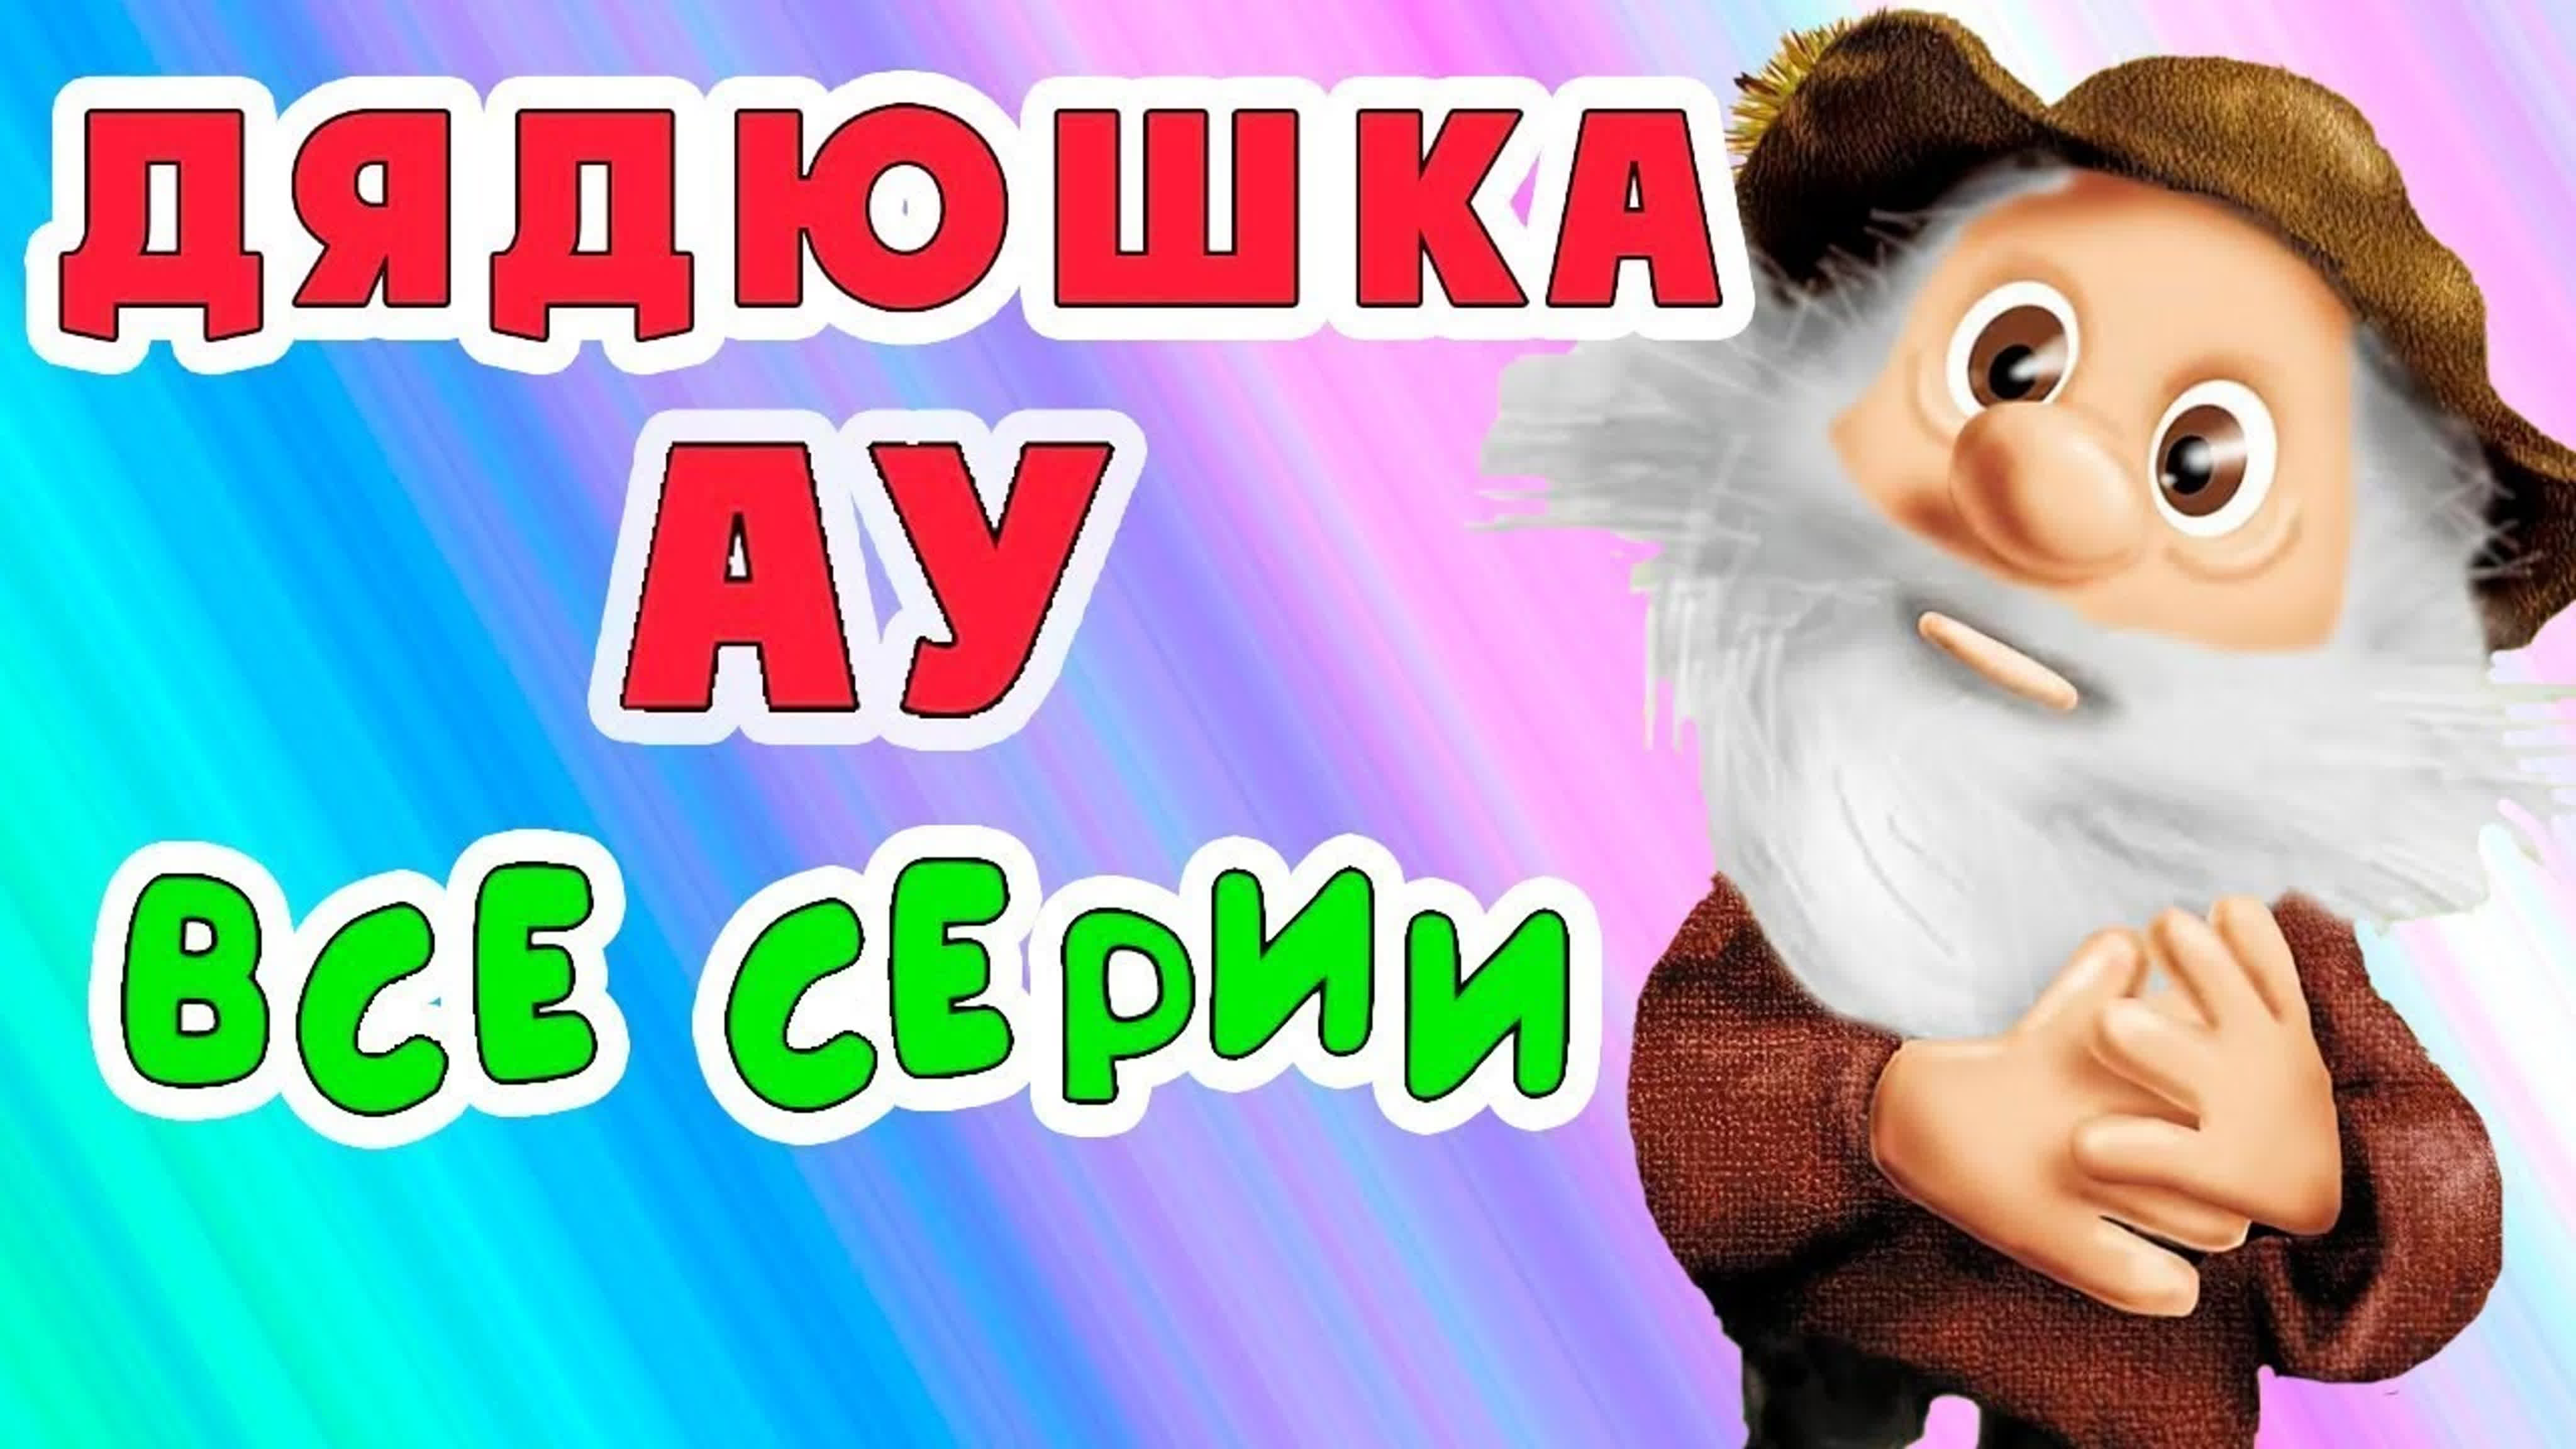 Дядюшка Ау — советский кукольный мультсериал-трилогия